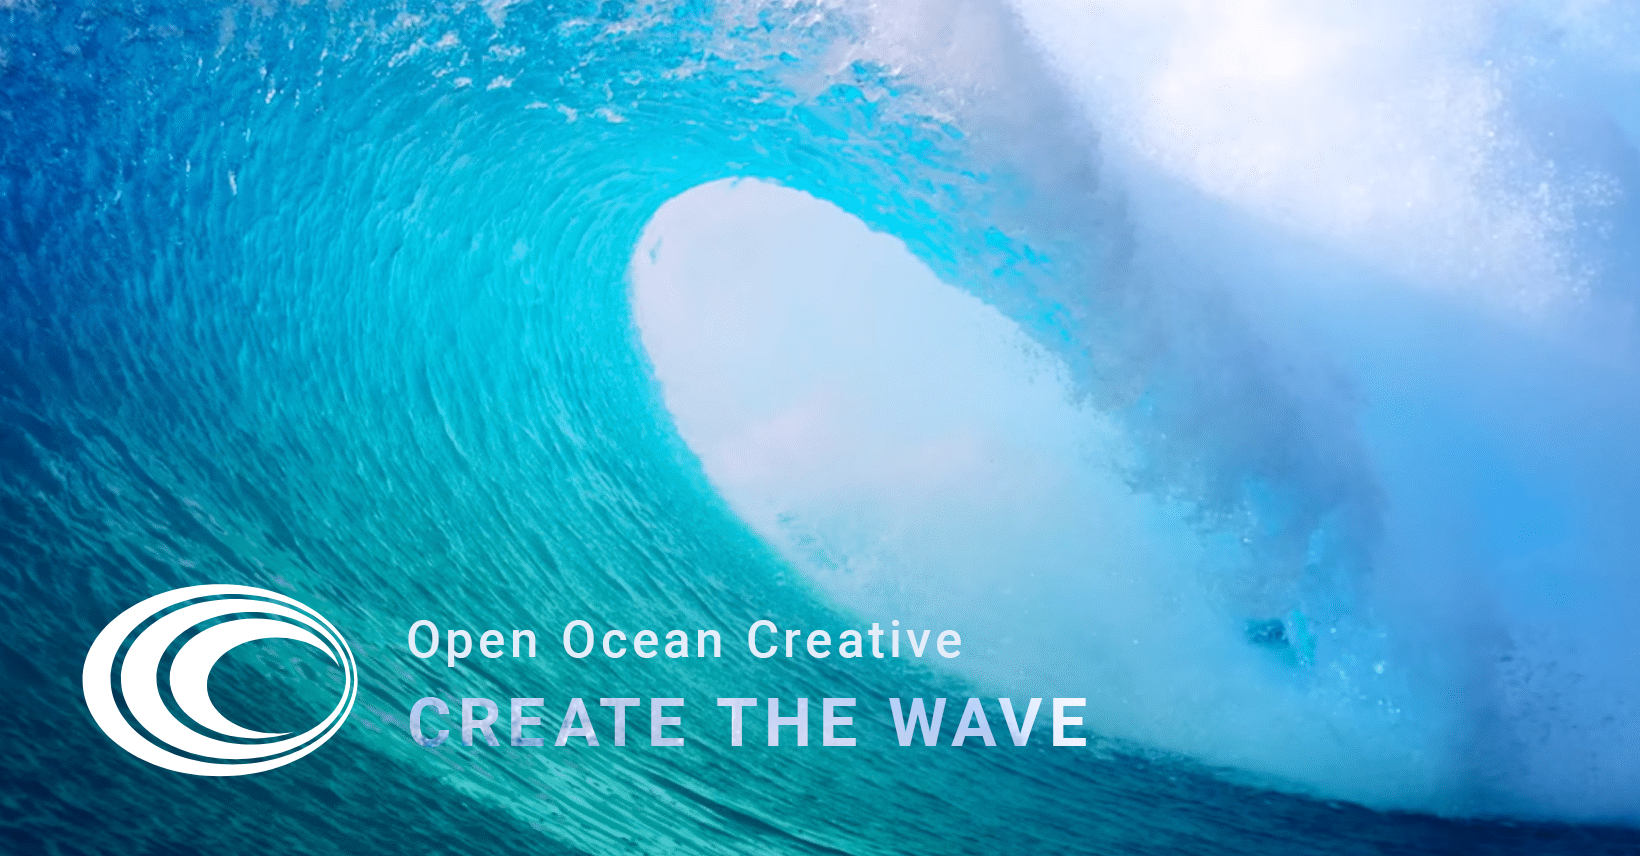 Welcome to Open Ocean Creative